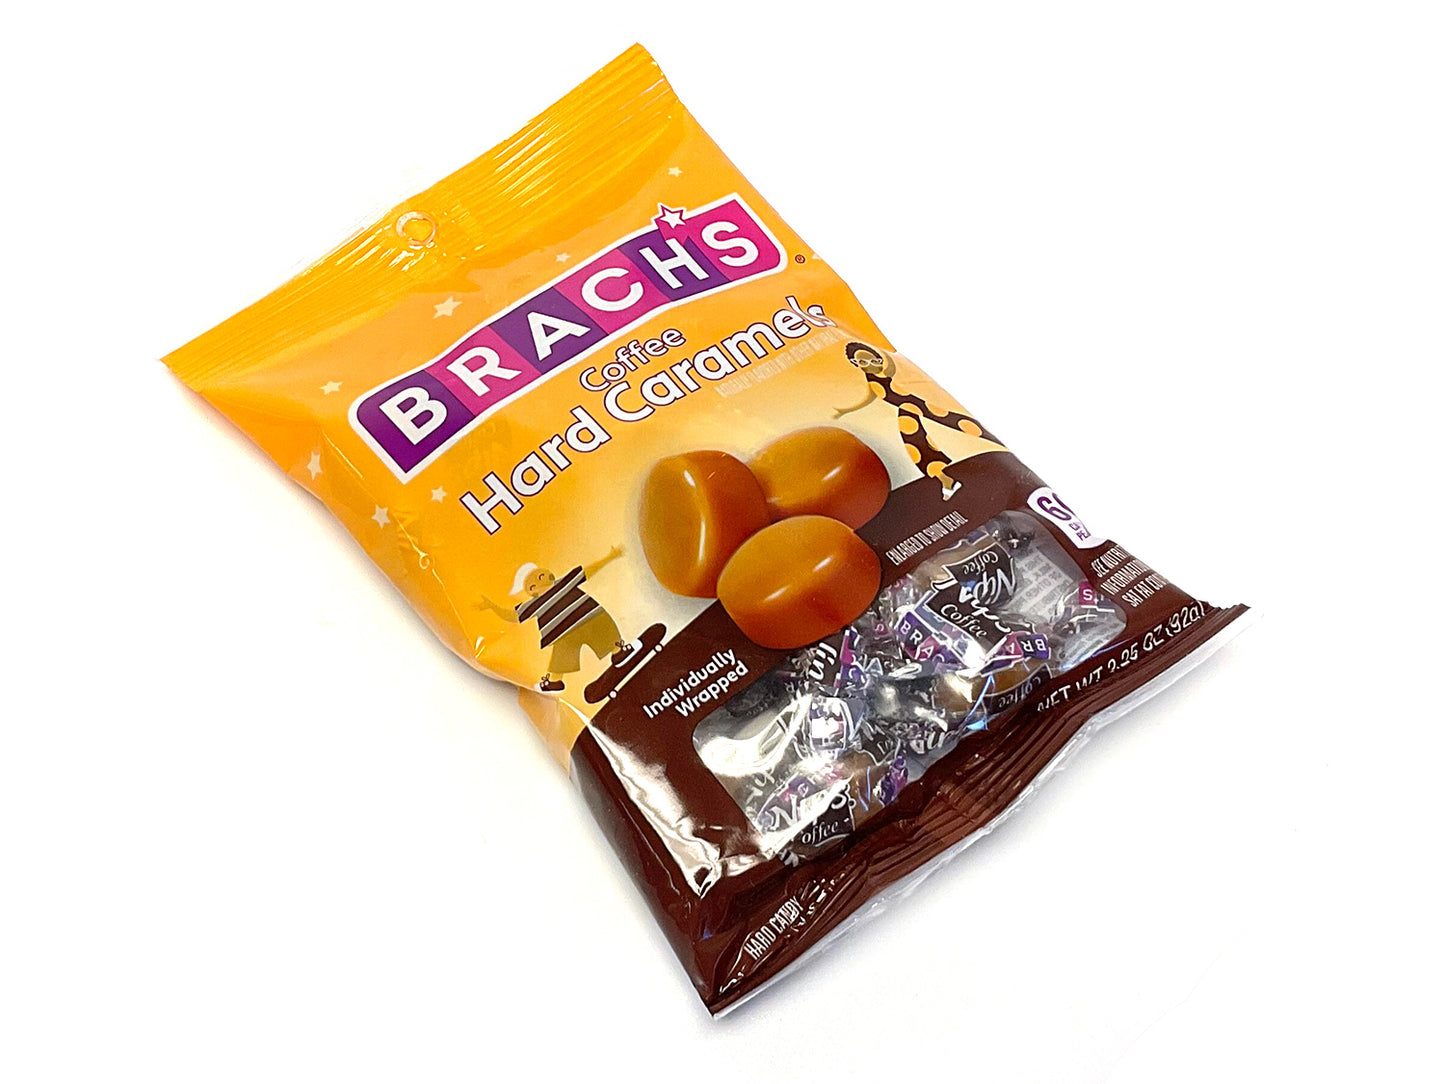 Brach's Nips Sugar-Free Caramel 3 oz. Bags – 12 / Case - Candy